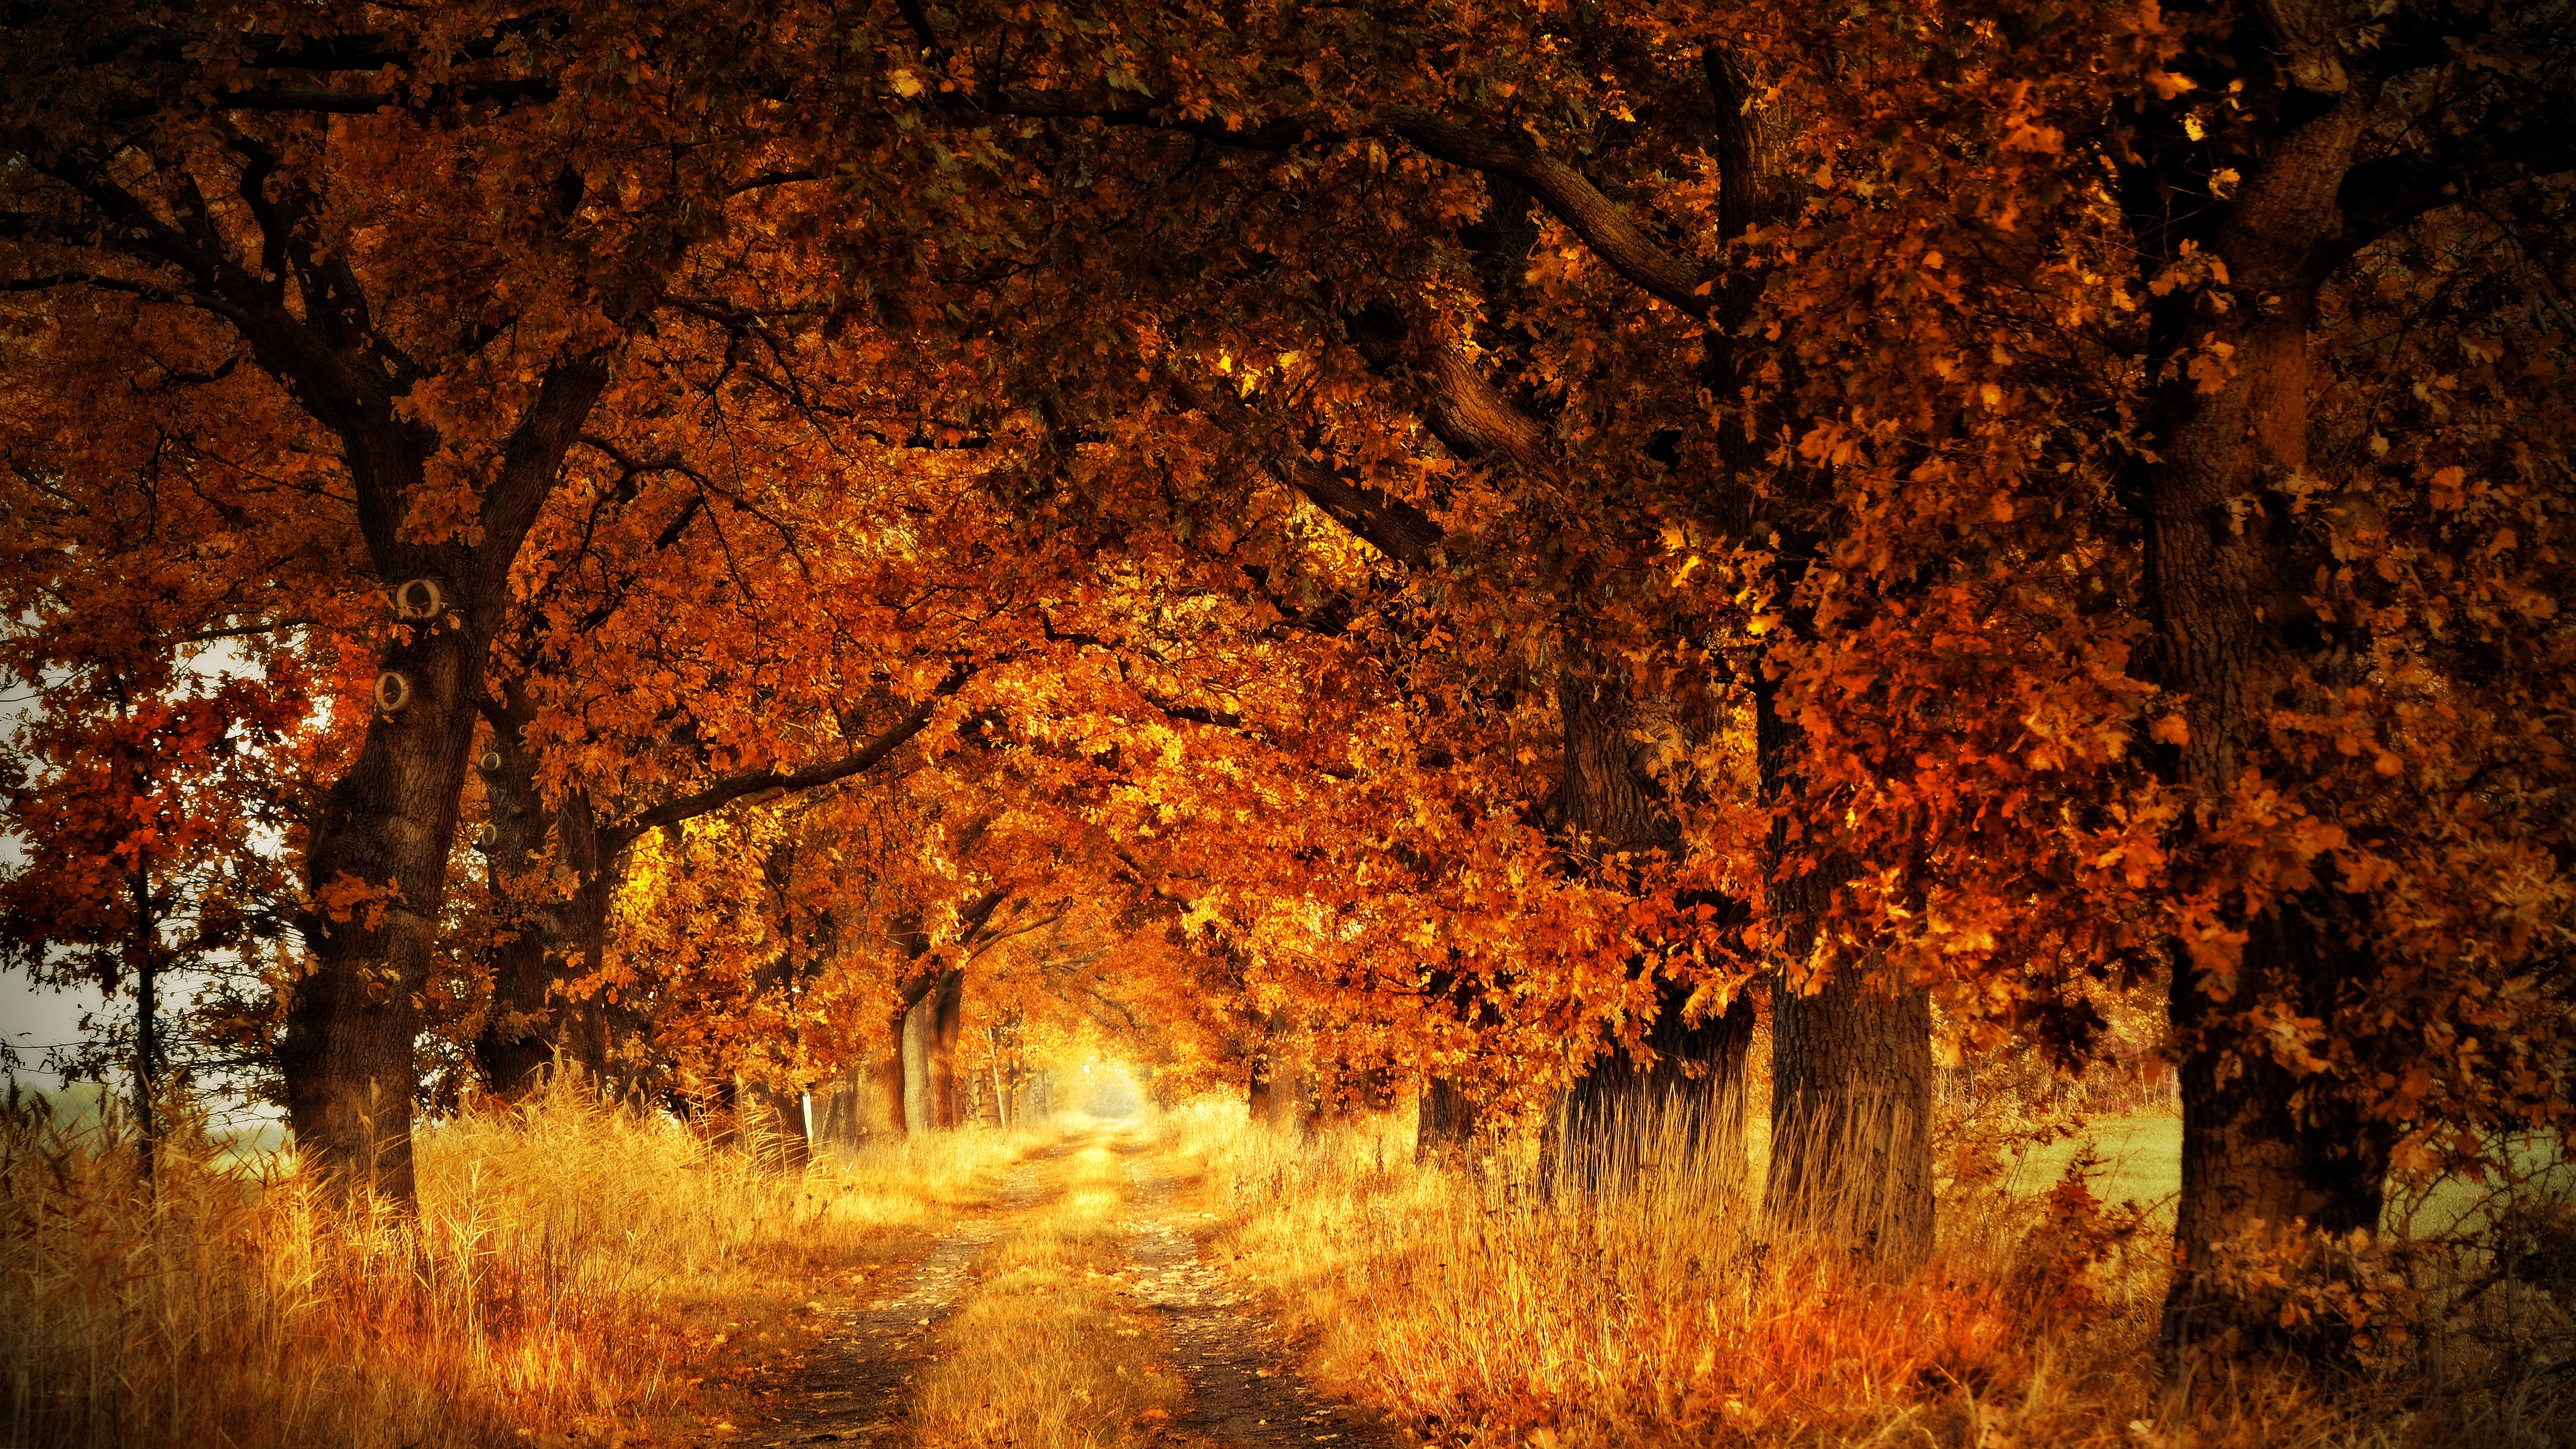 Скачать обои бесплатно Природа, Осень, Дорожка, Земля/природа, Грязная Дорога картинка на рабочий стол ПК